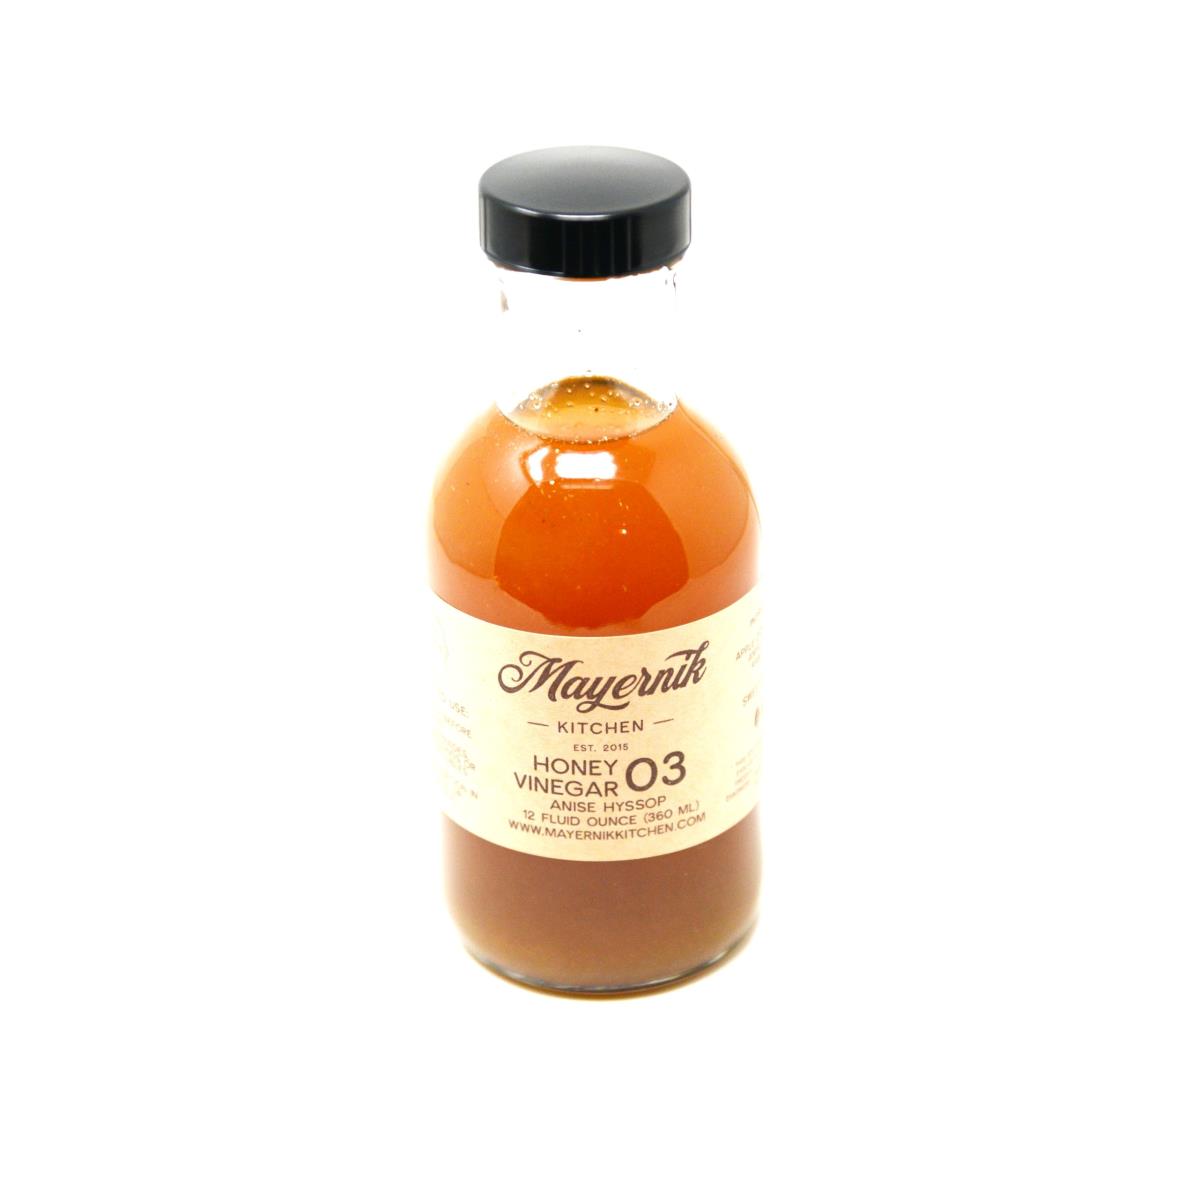 Honey Vinegar - Anise Hyssop